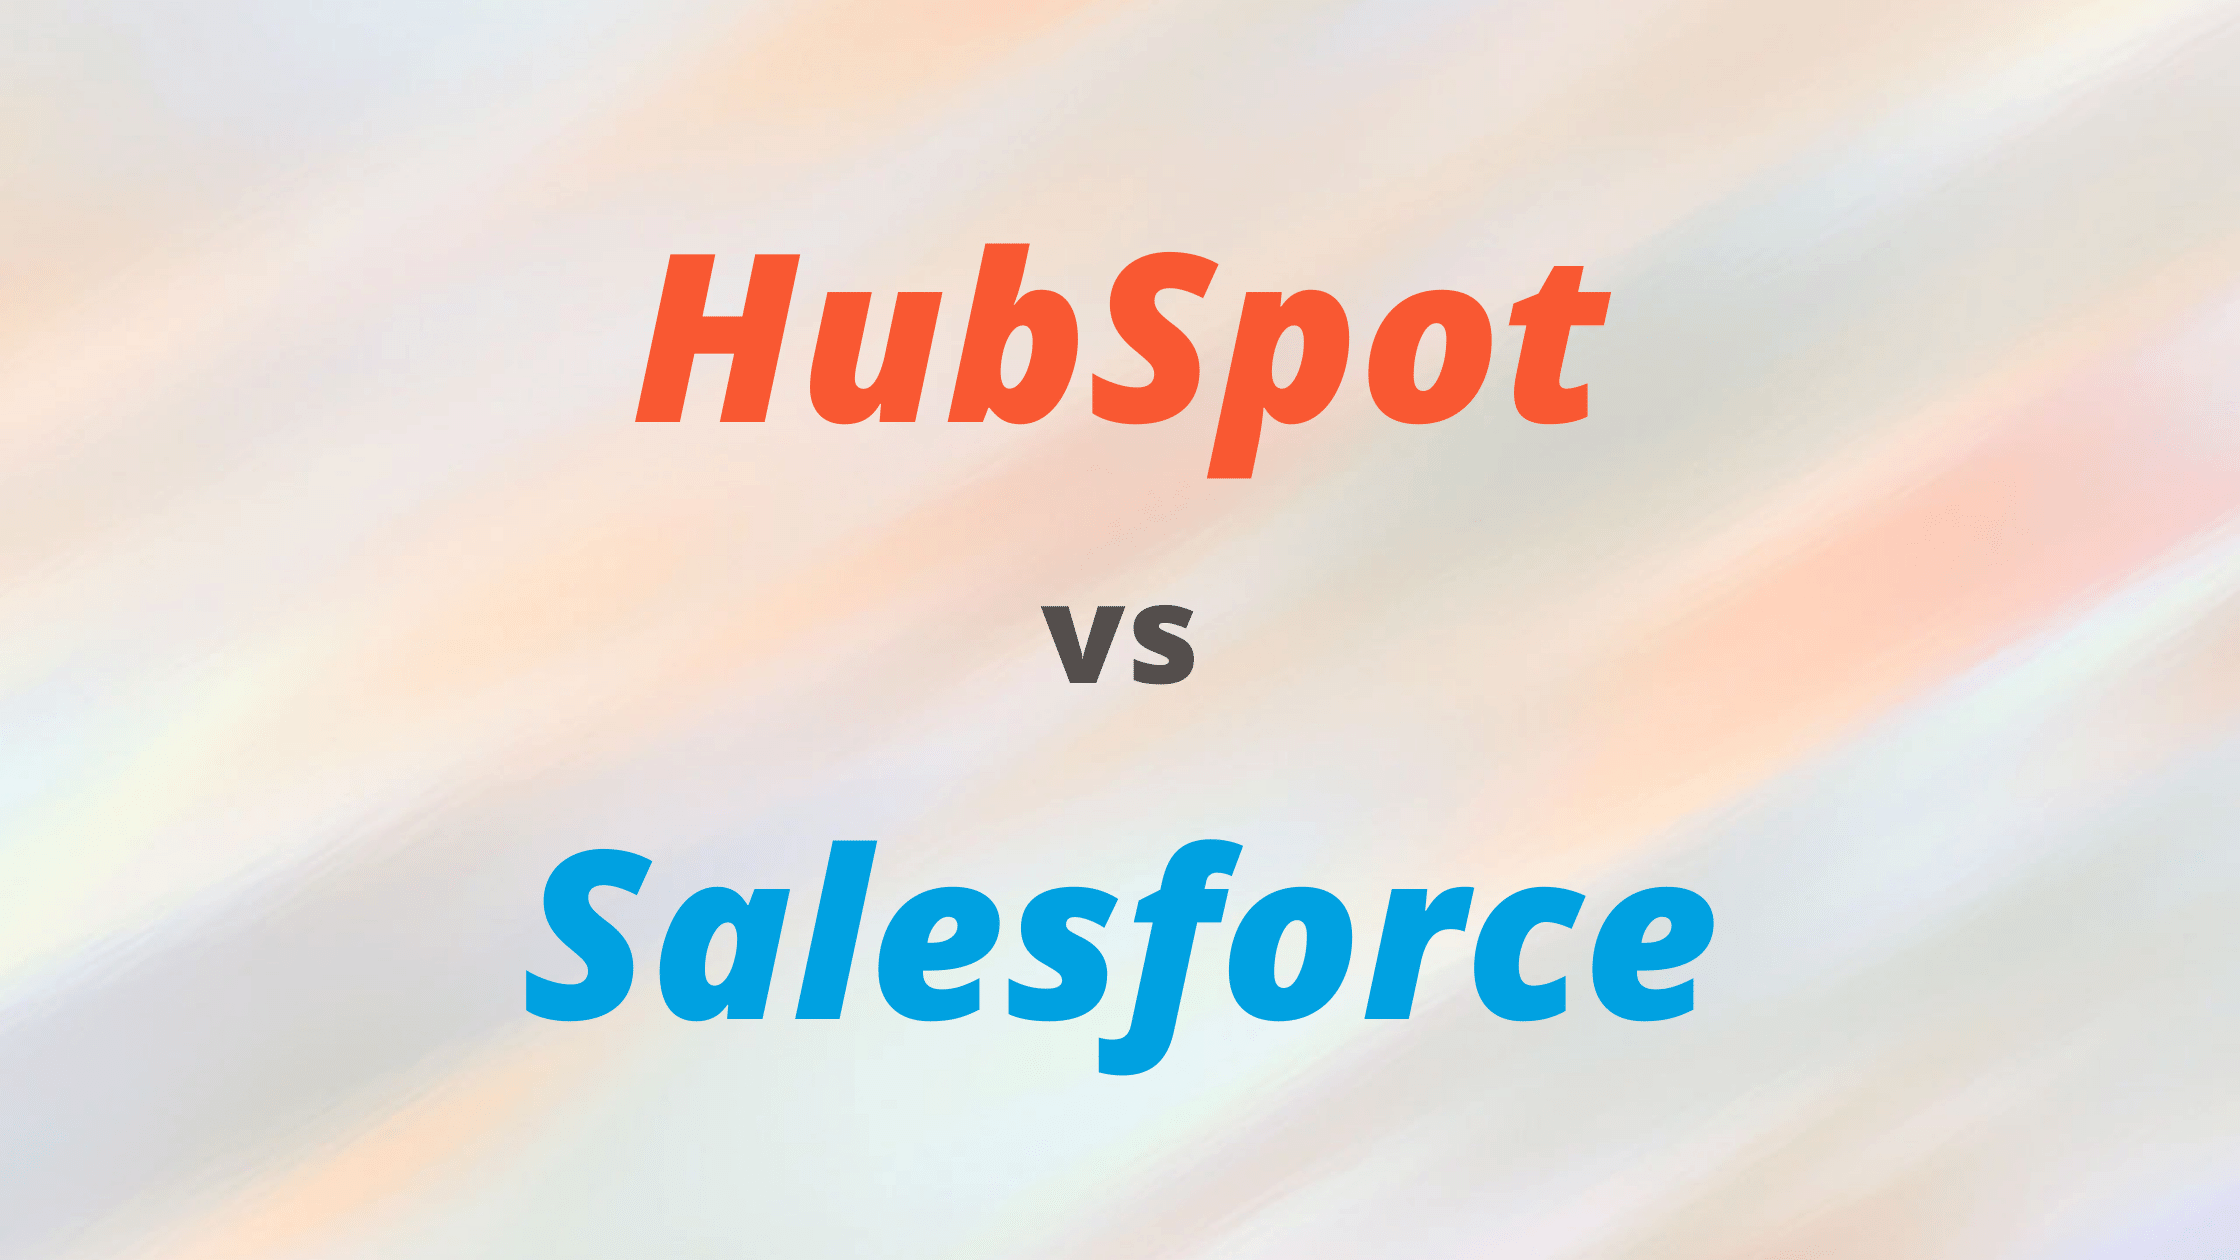 HubSpot versus Salesforce